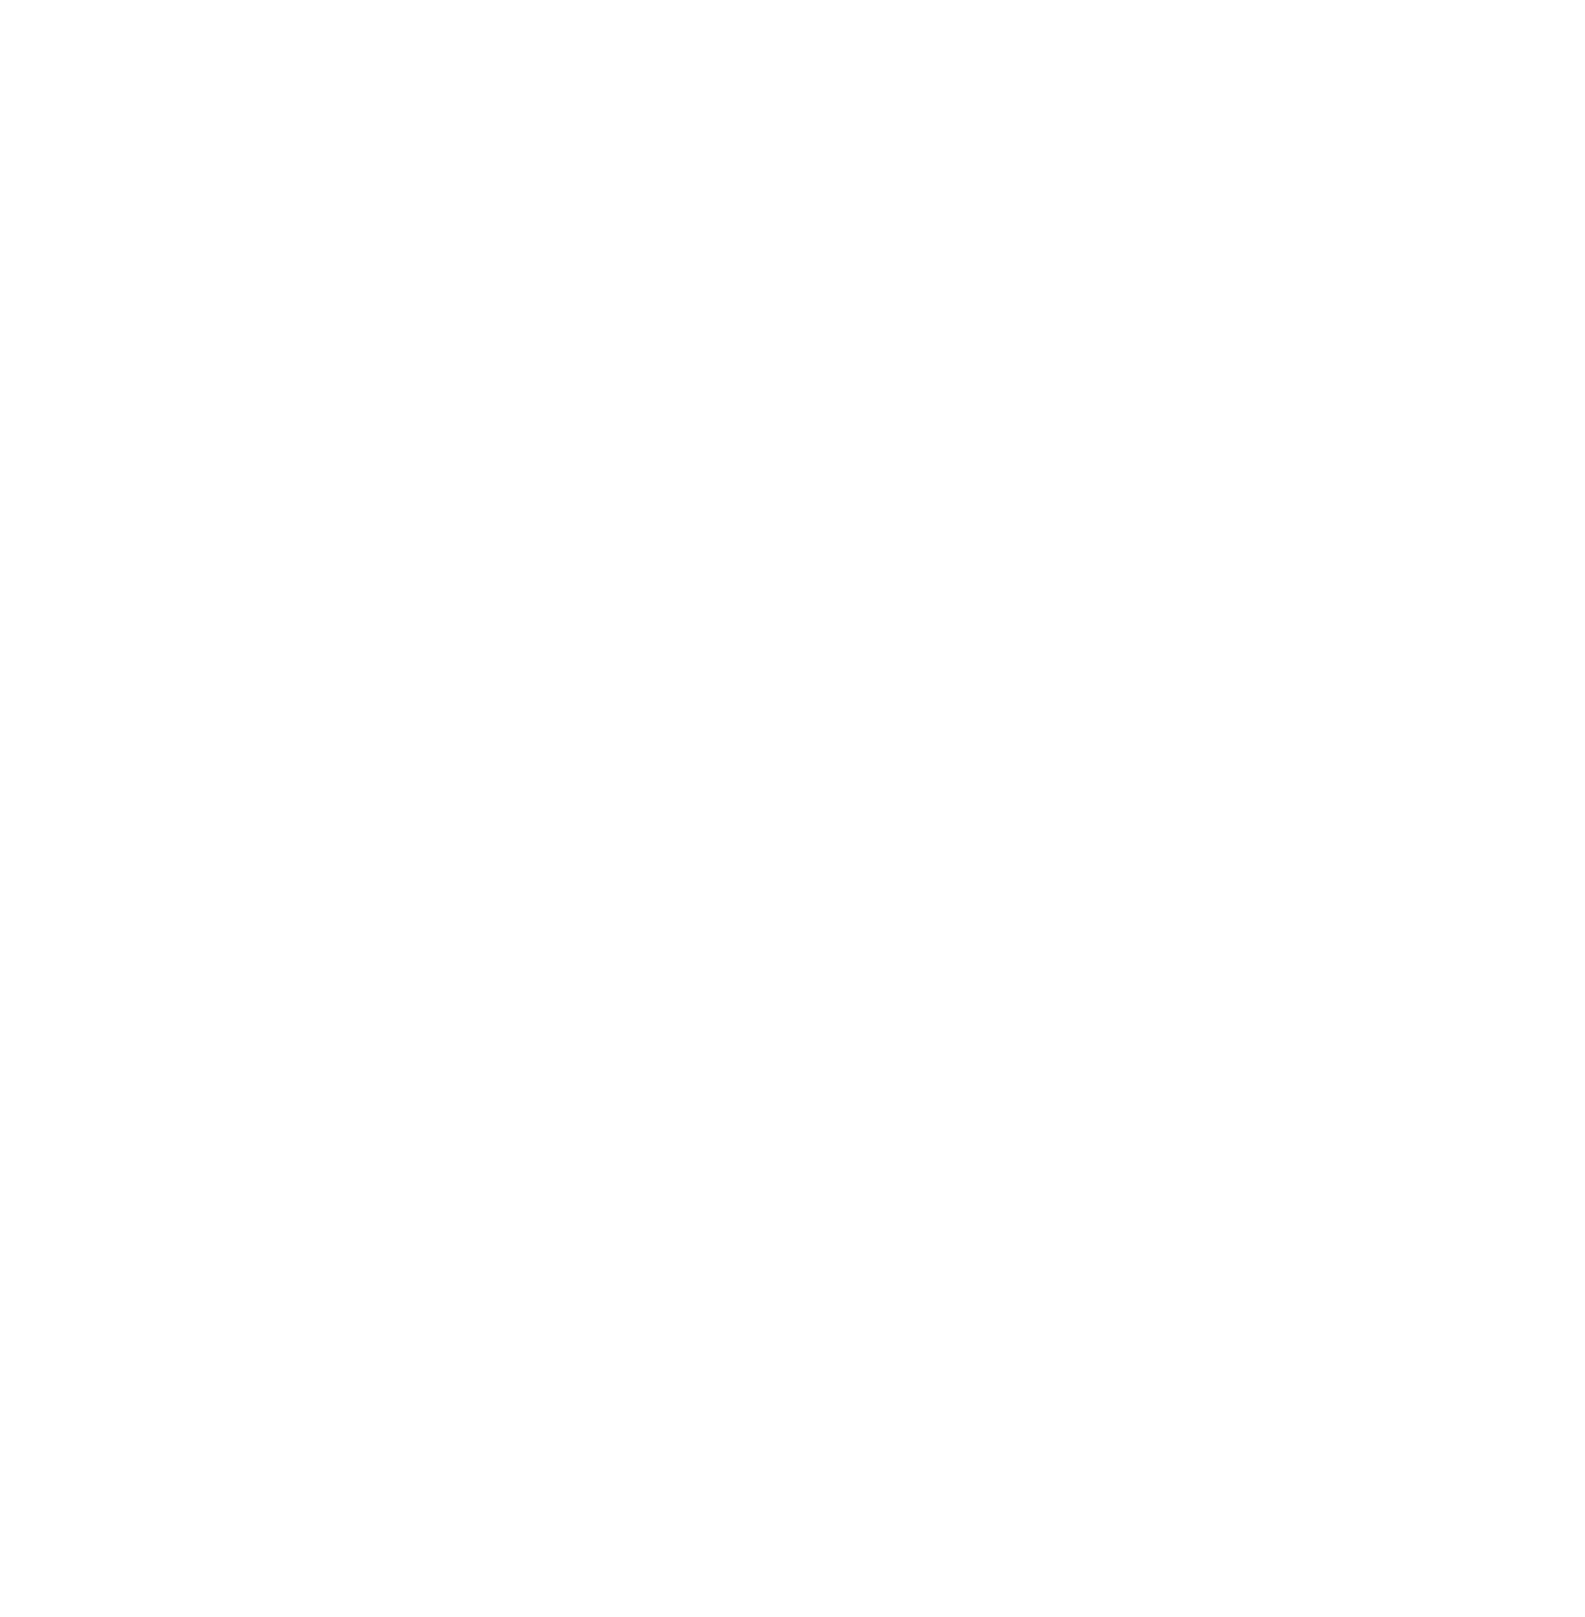 Southern Copper logo pour fonds sombres (PNG transparent)